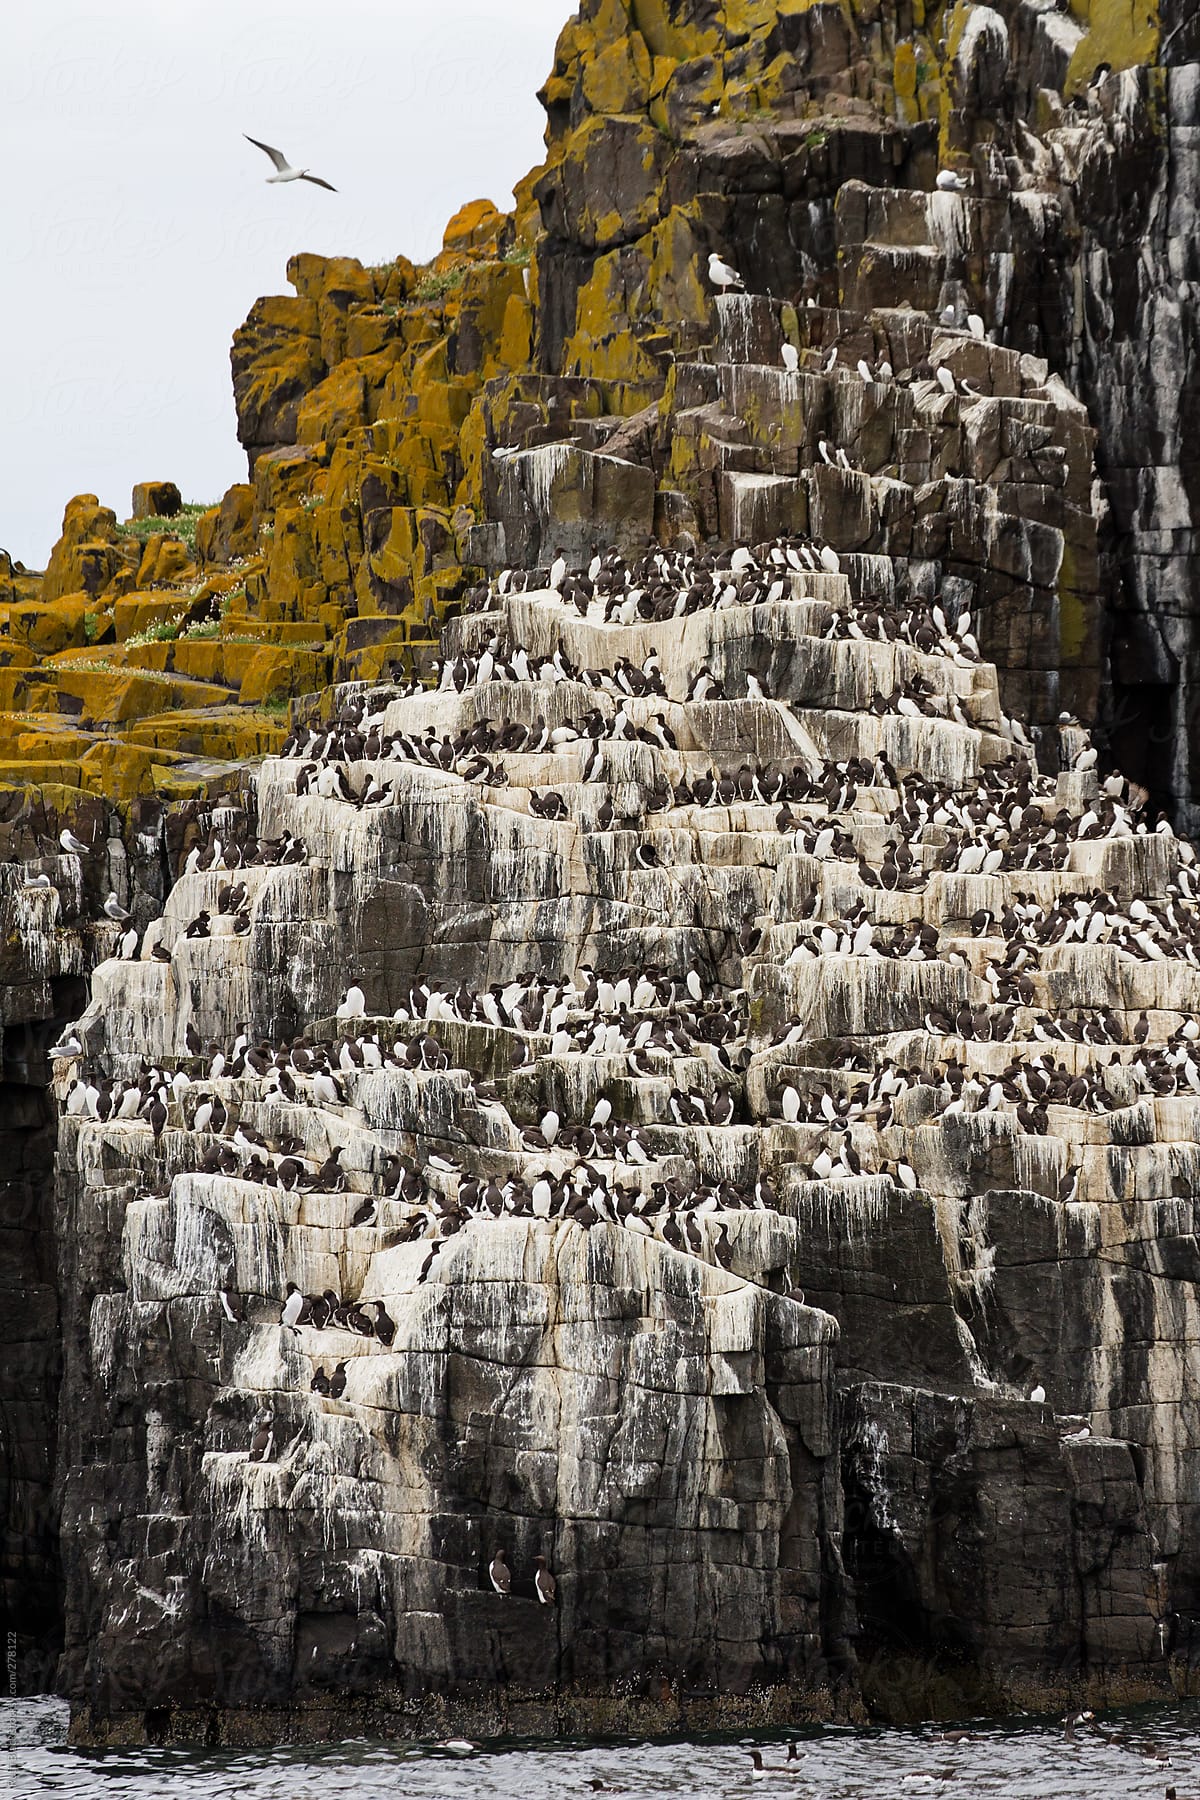 Guillemots perched on a cliffside